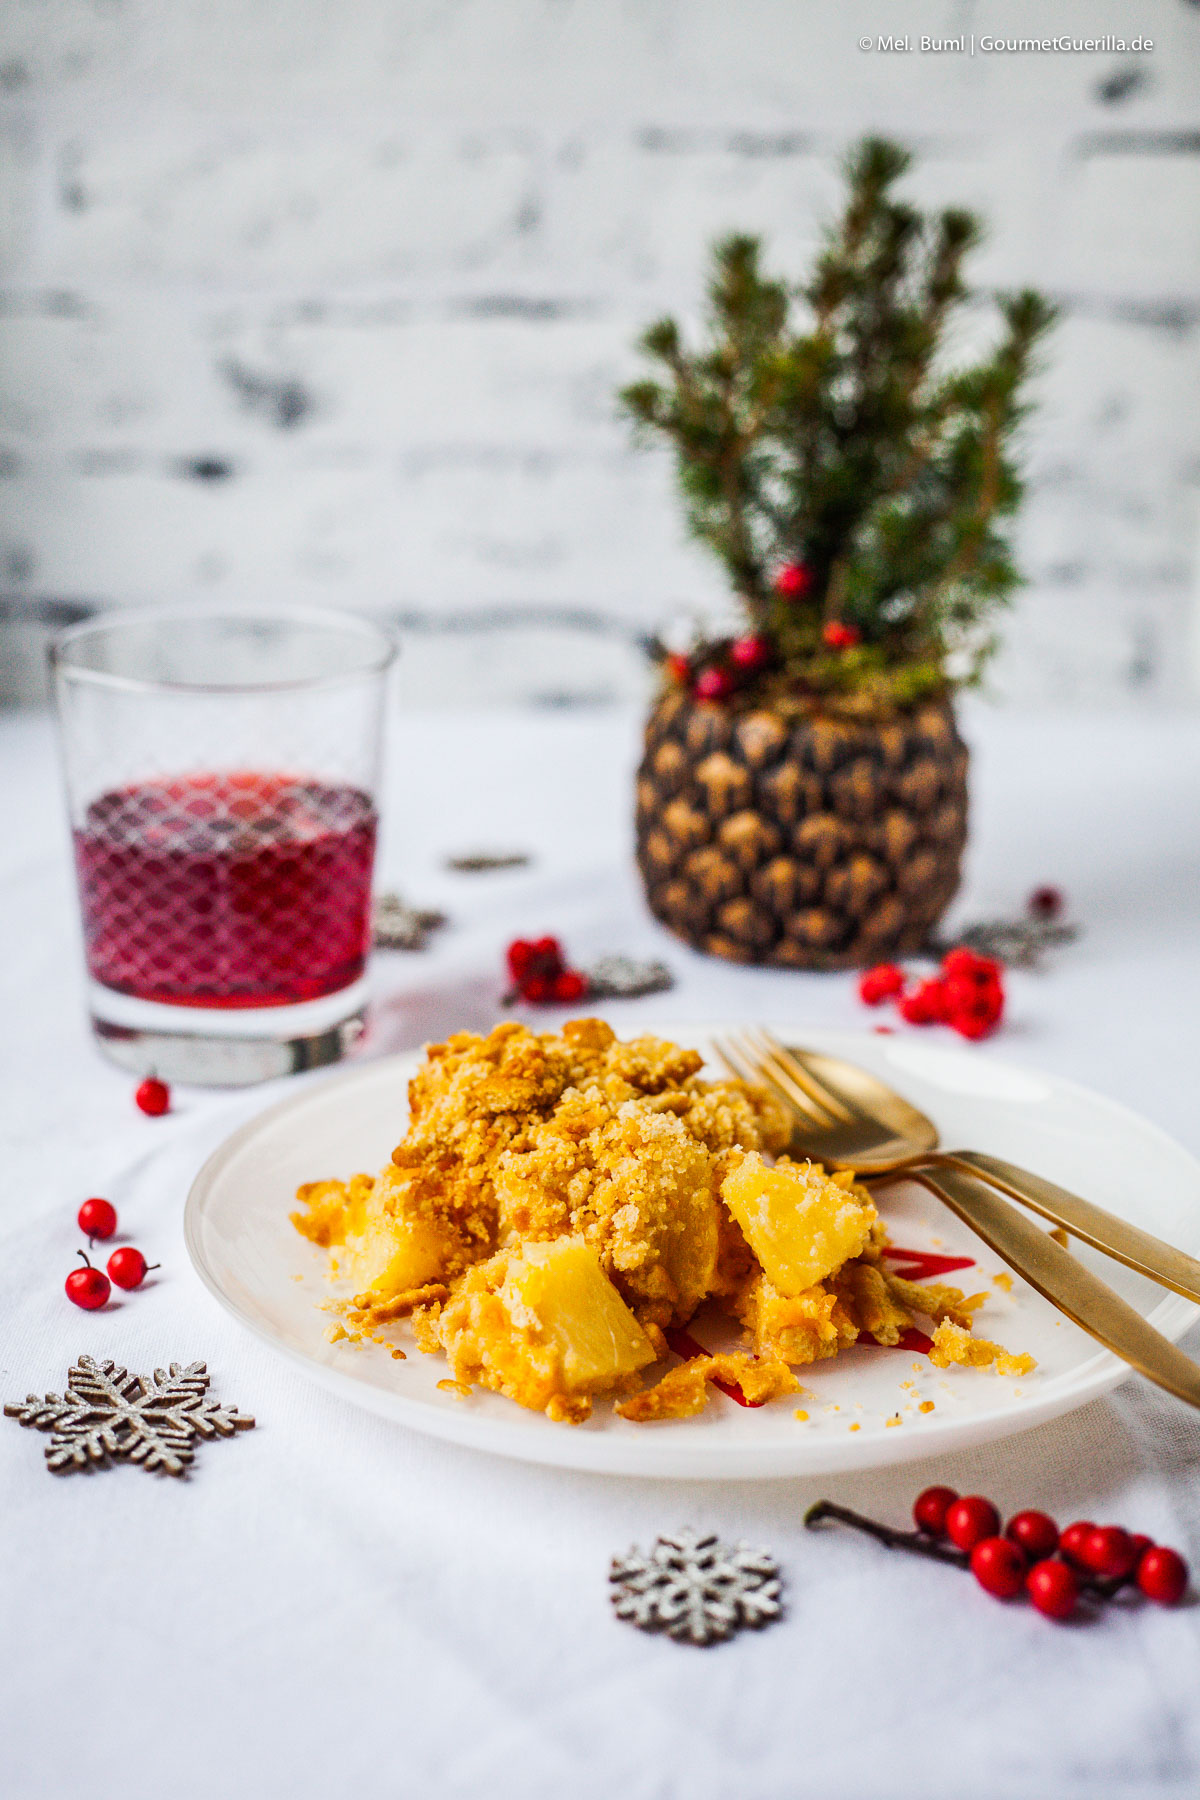 North Carolina Weihnachts-Auflauf mit Ananas und Cheddar | GourmetGuerilla.de